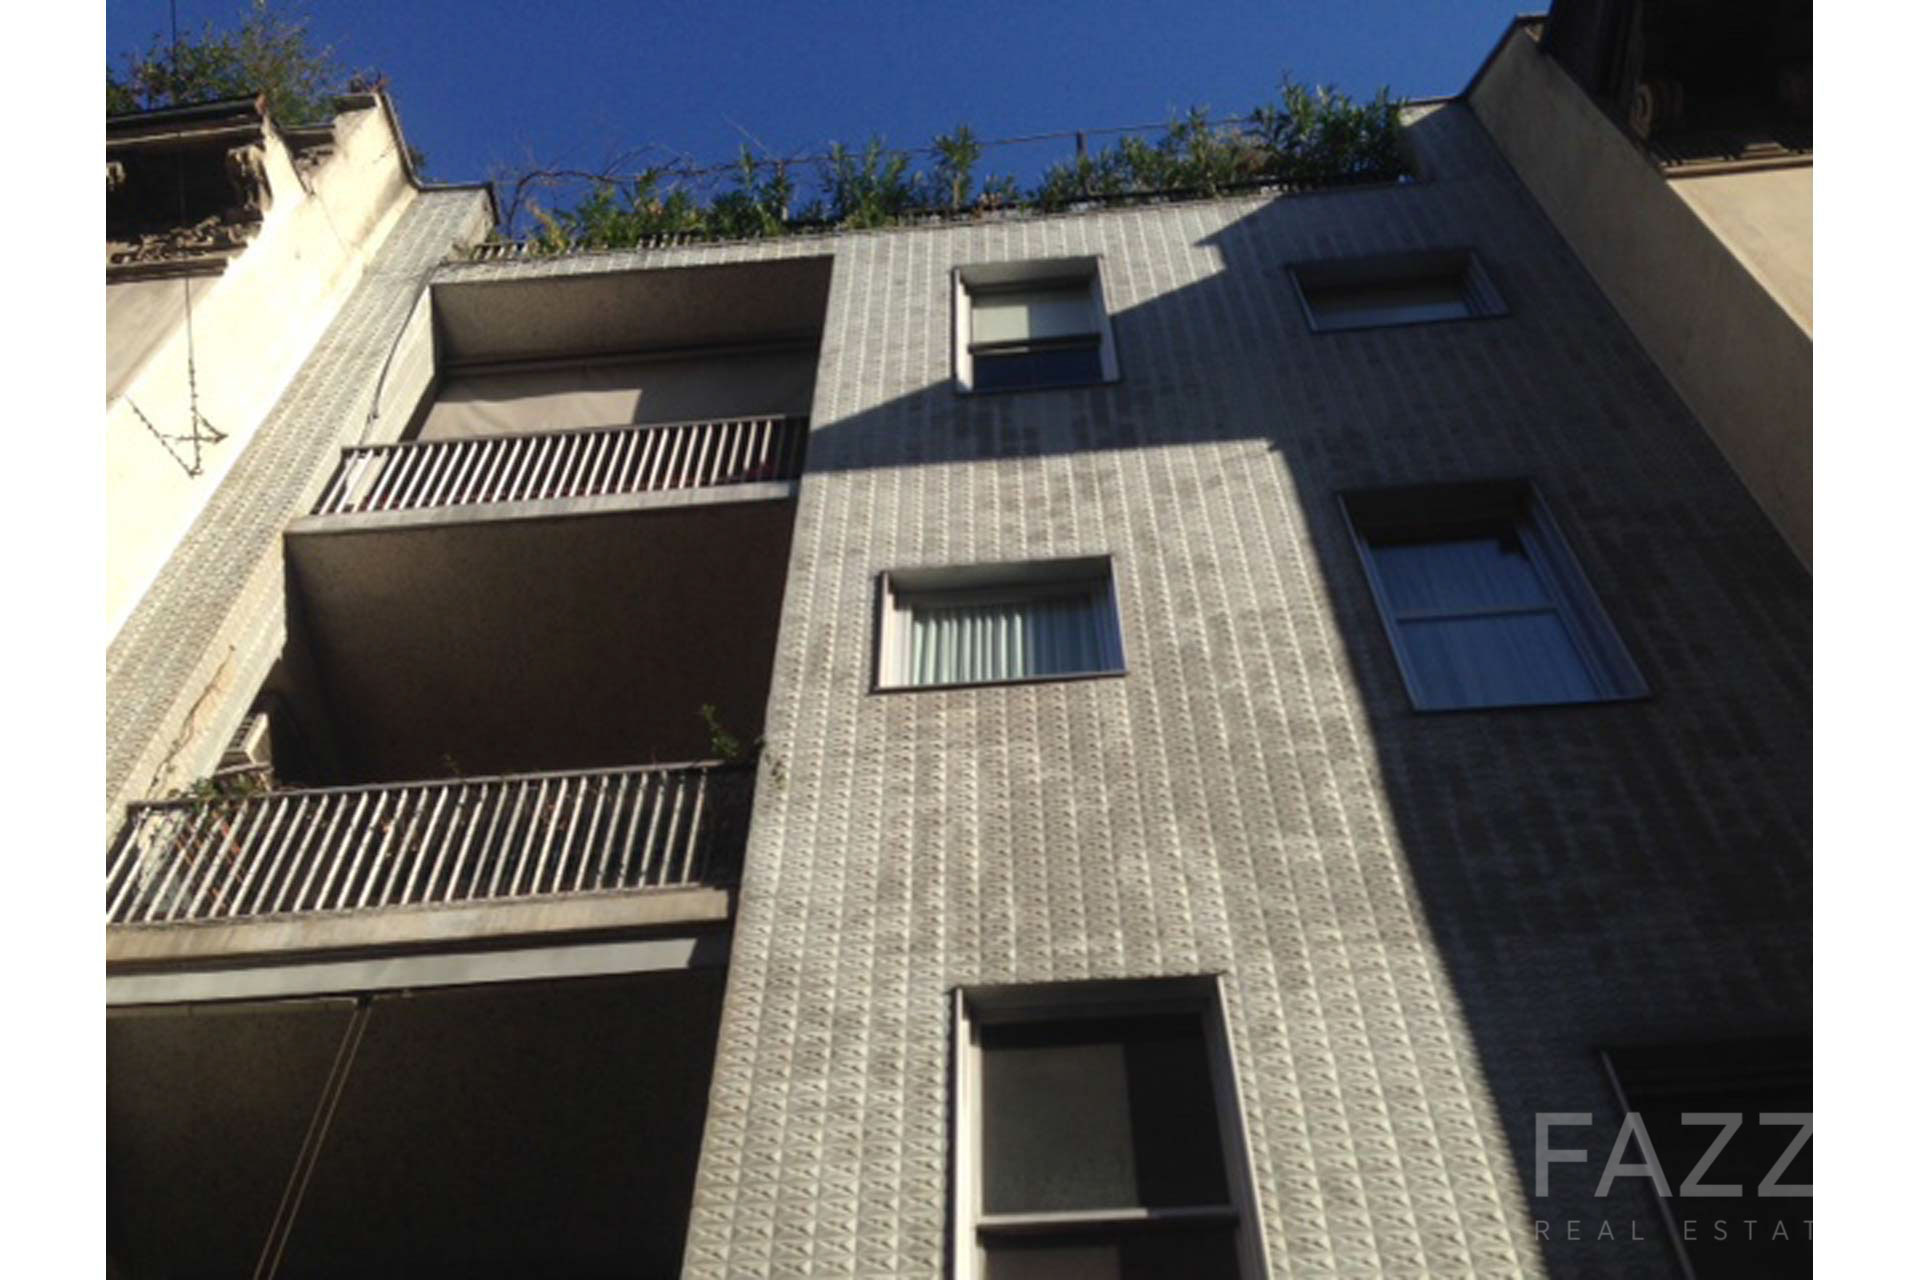 affitto appartamento via donizetti milano palazzo fazzi real estate